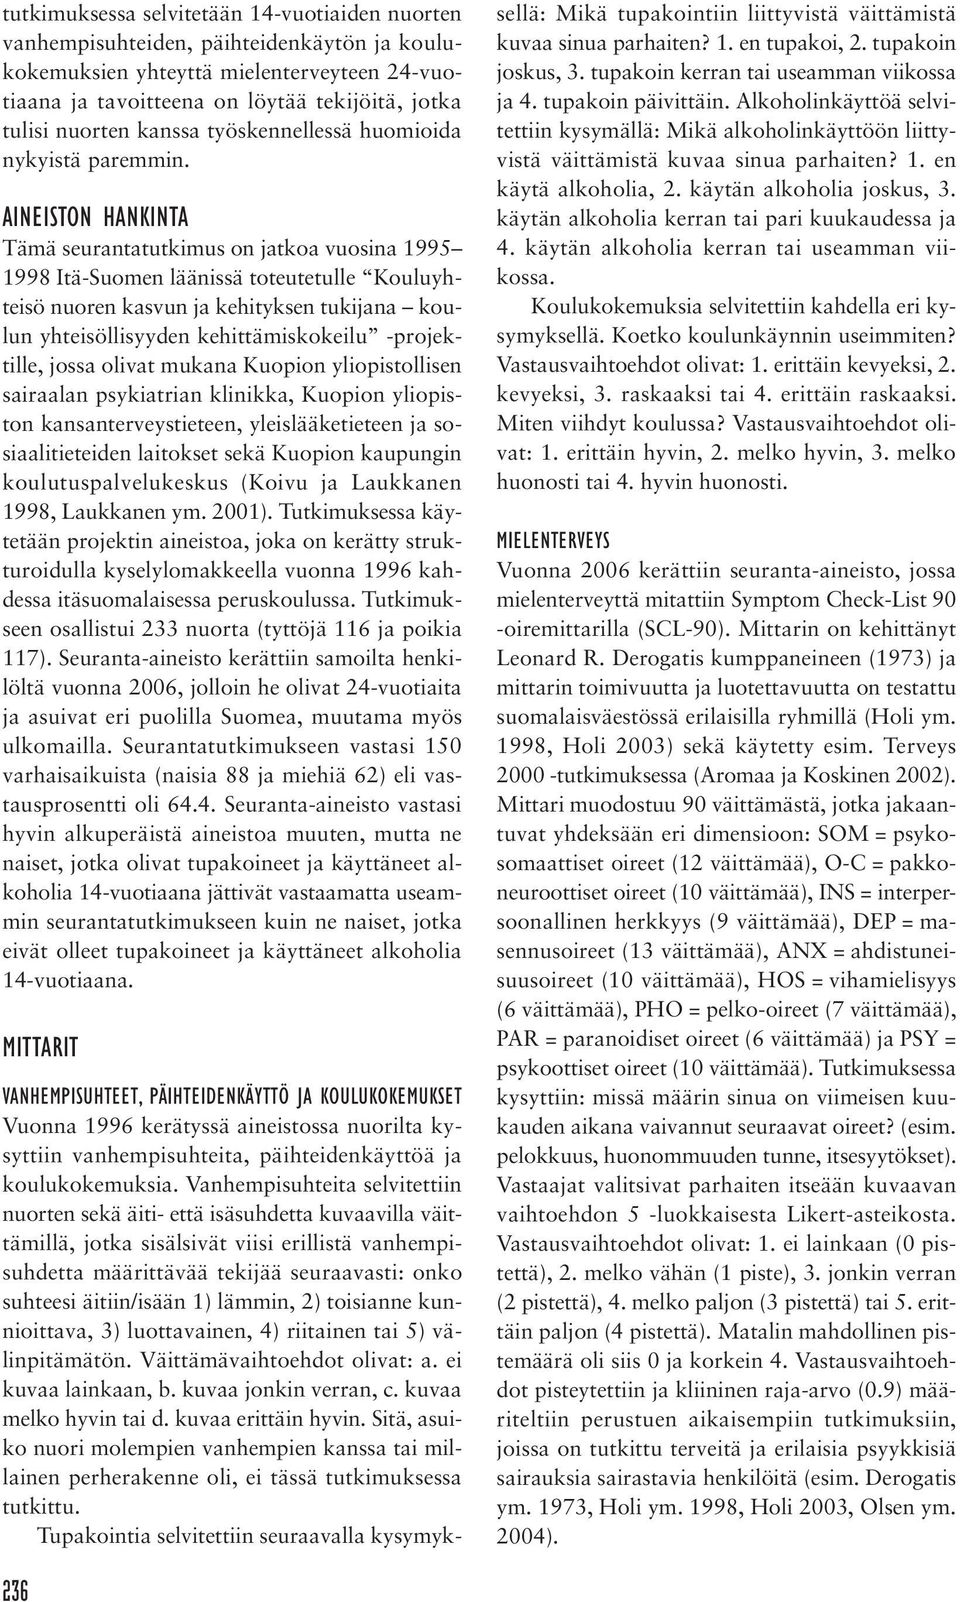 AINEISTON HANKINTA Tämä seurantatutkimus on jatkoa vuosina 1995 1998 Itä-Suomen läänissä toteutetulle Kouluyhteisö nuoren kasvun ja kehityksen tukijana koulun yhteisöllisyyden kehittämiskokeilu